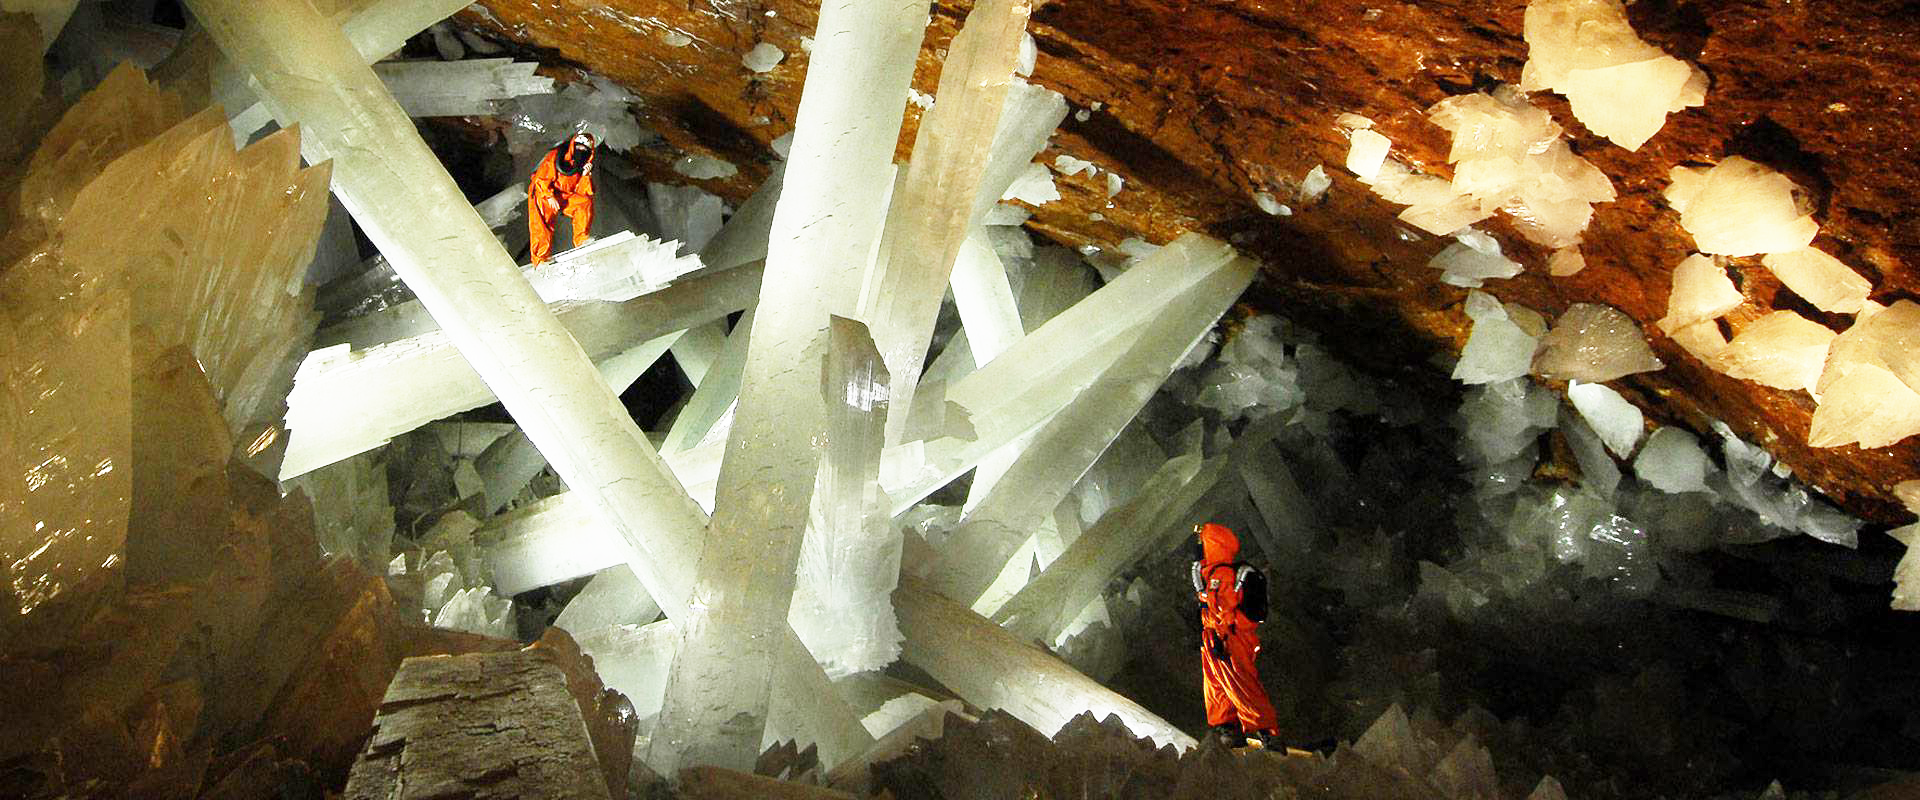 Les cristaux géants de la Grotte de Naica